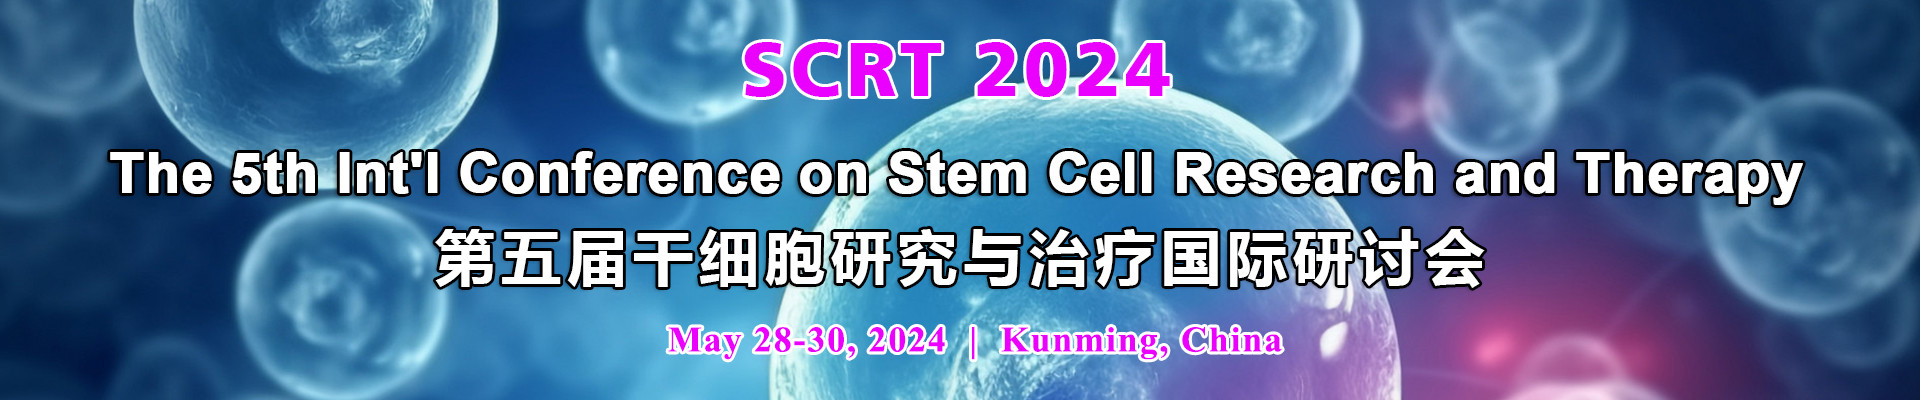 第五屆干細胞研究與治療國際研討會(SCRT 2024)